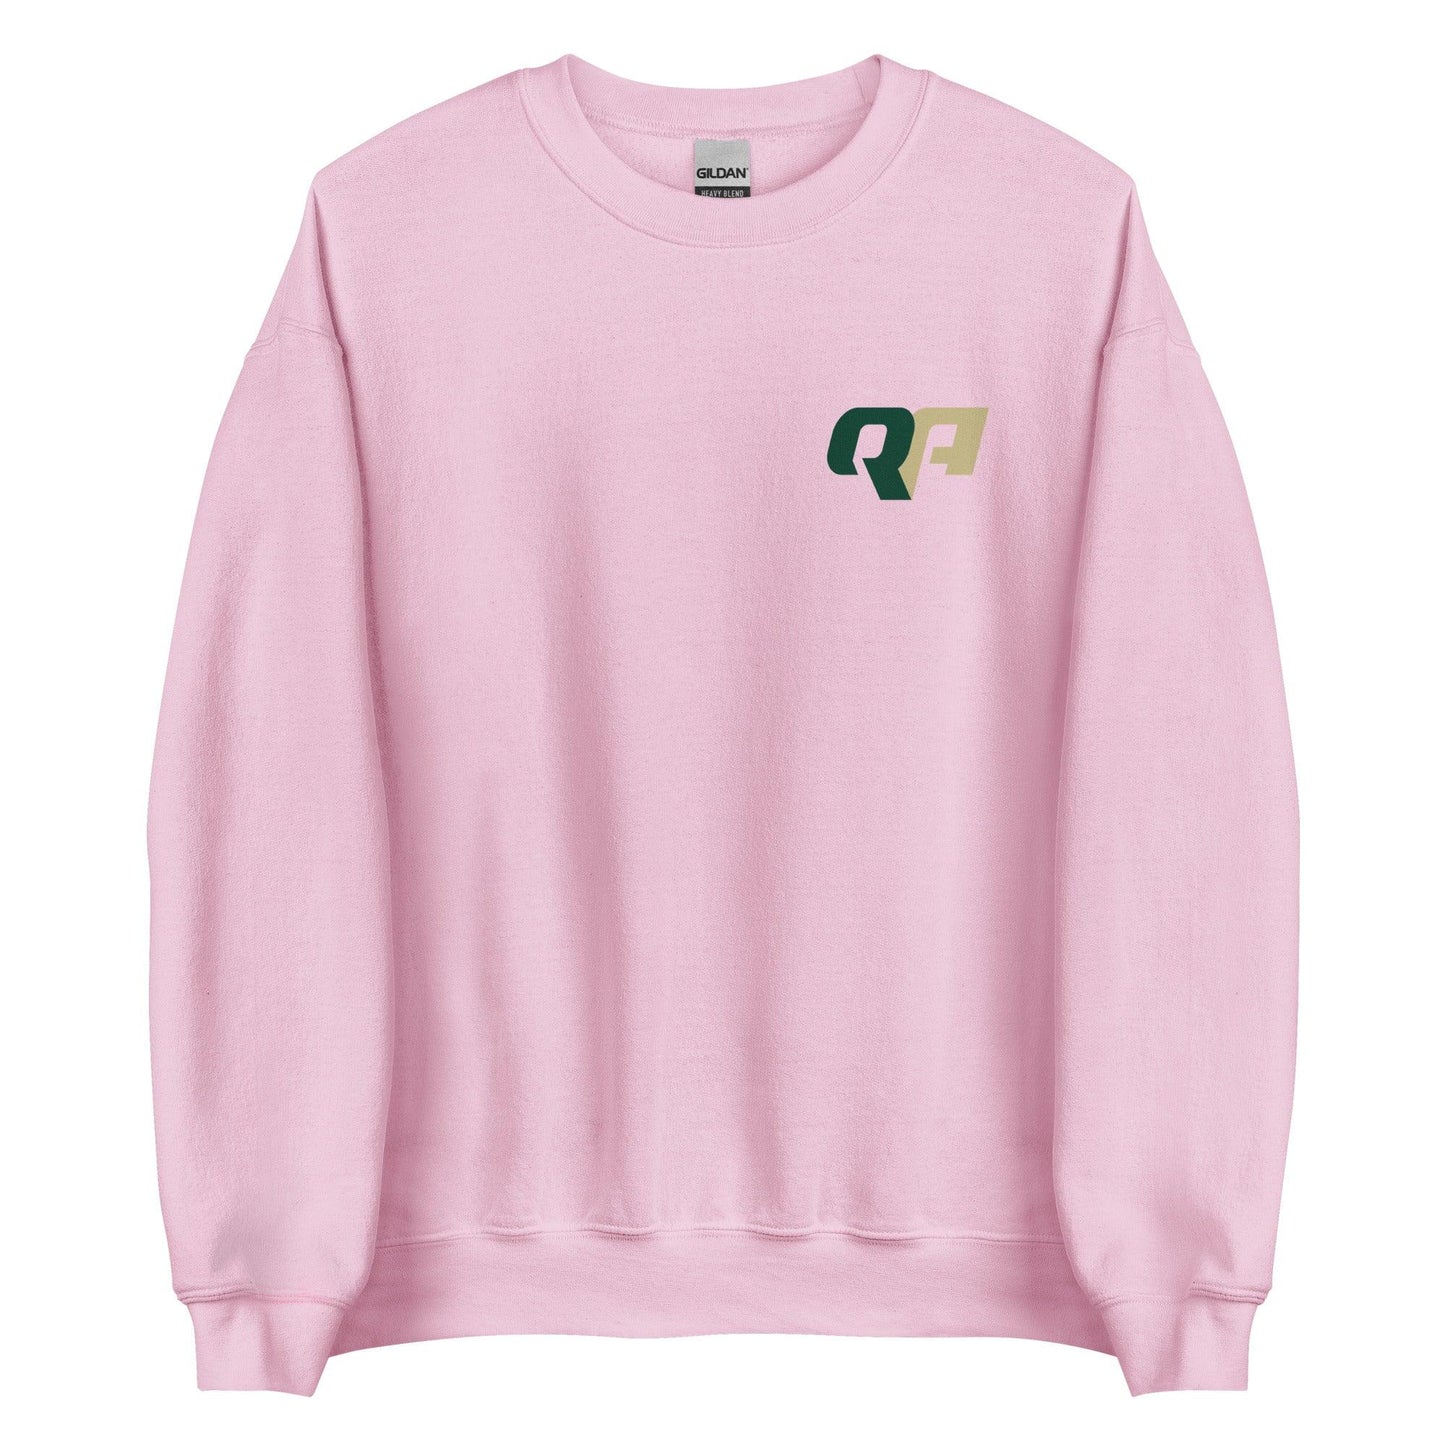 Quadry Adams "Essential" Sweatshirt - Fan Arch